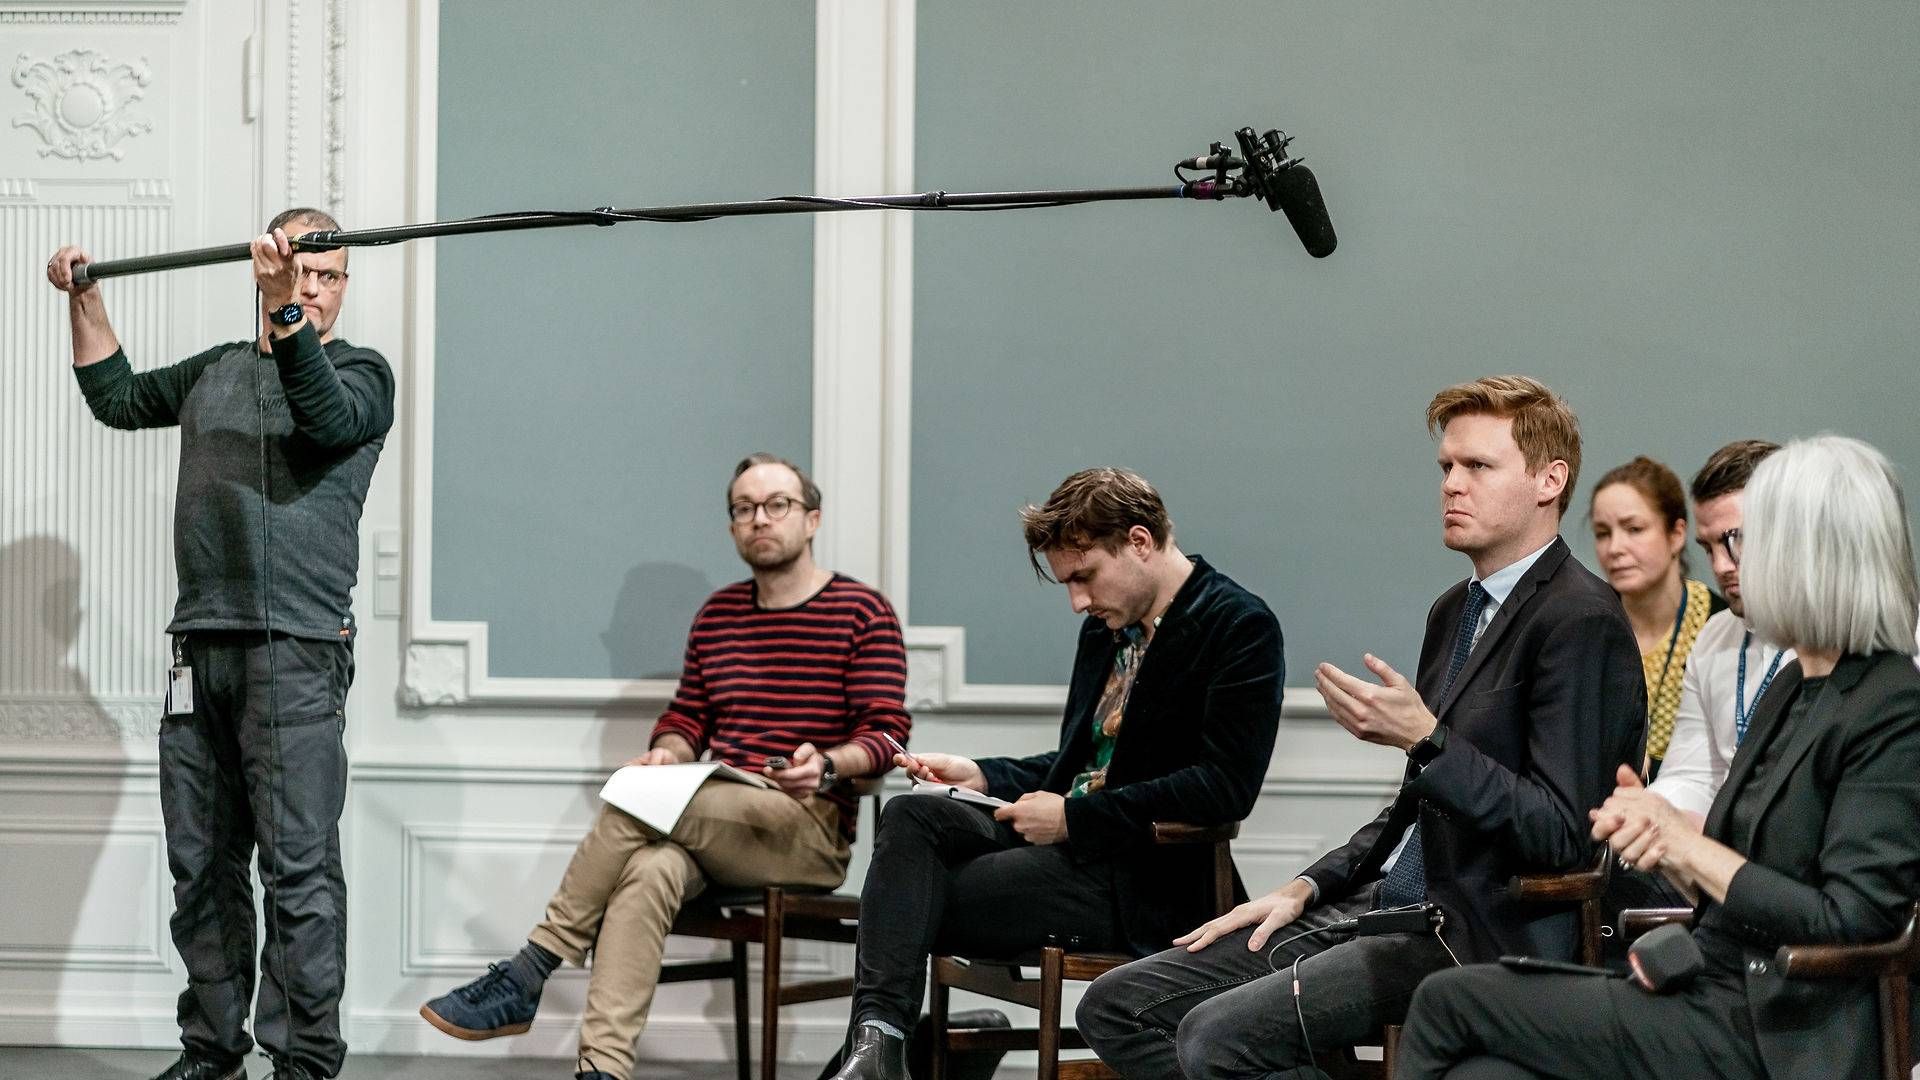 Hans Redder (anden fra højre) er politisk analytiker hos TV 2, og skifter alligevel ikke som planlagt til Berlingske næste år. | Foto: Aleksander Klug/Ritzau Scanpix